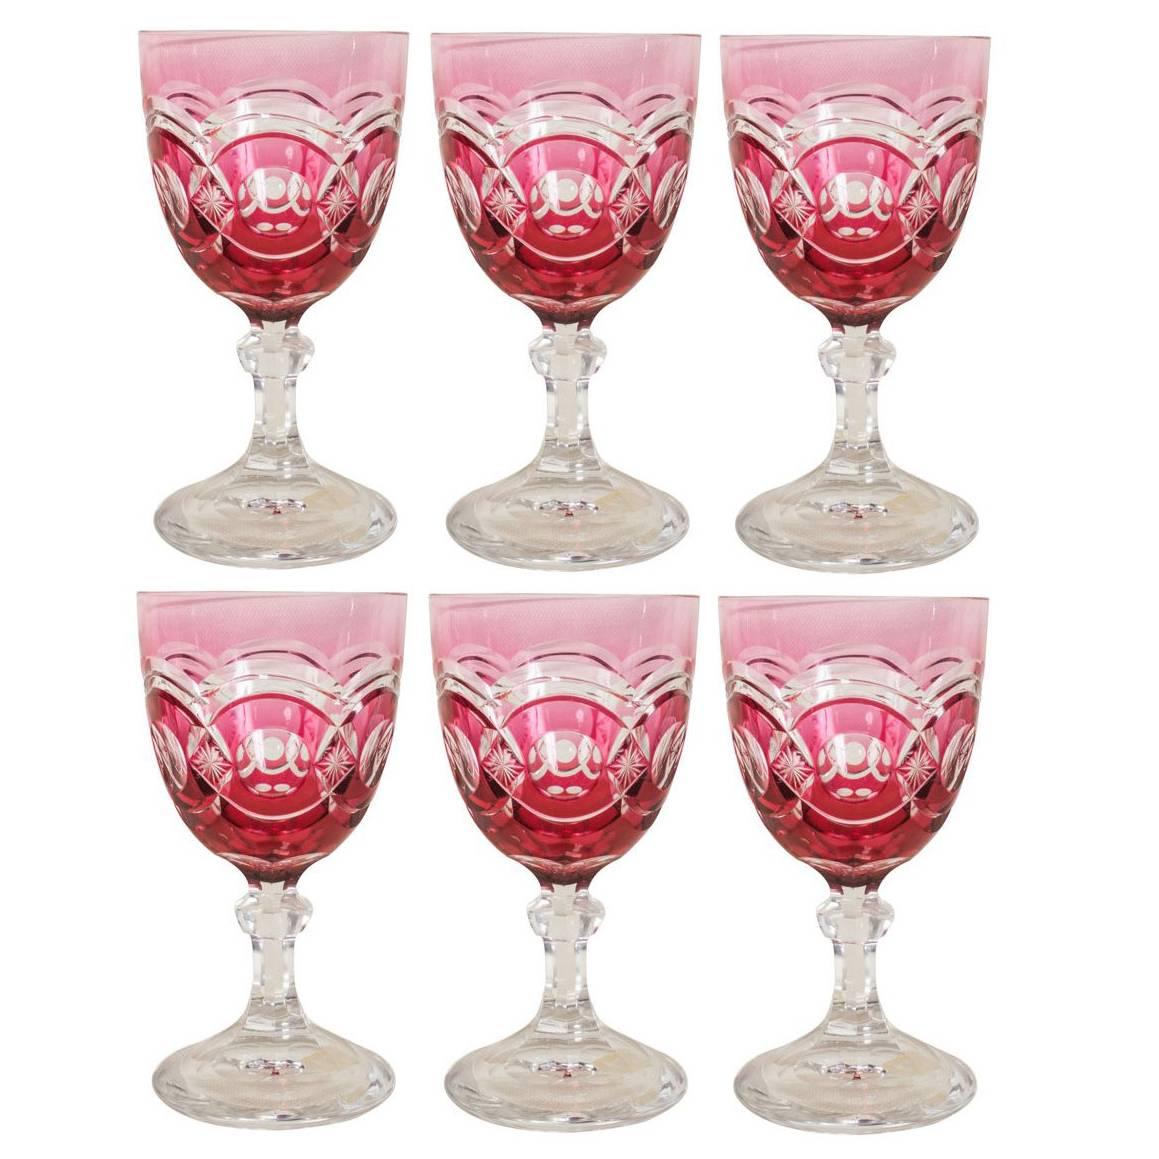 Cranberry Overlay Stemmed Wine Glasses/Goblets